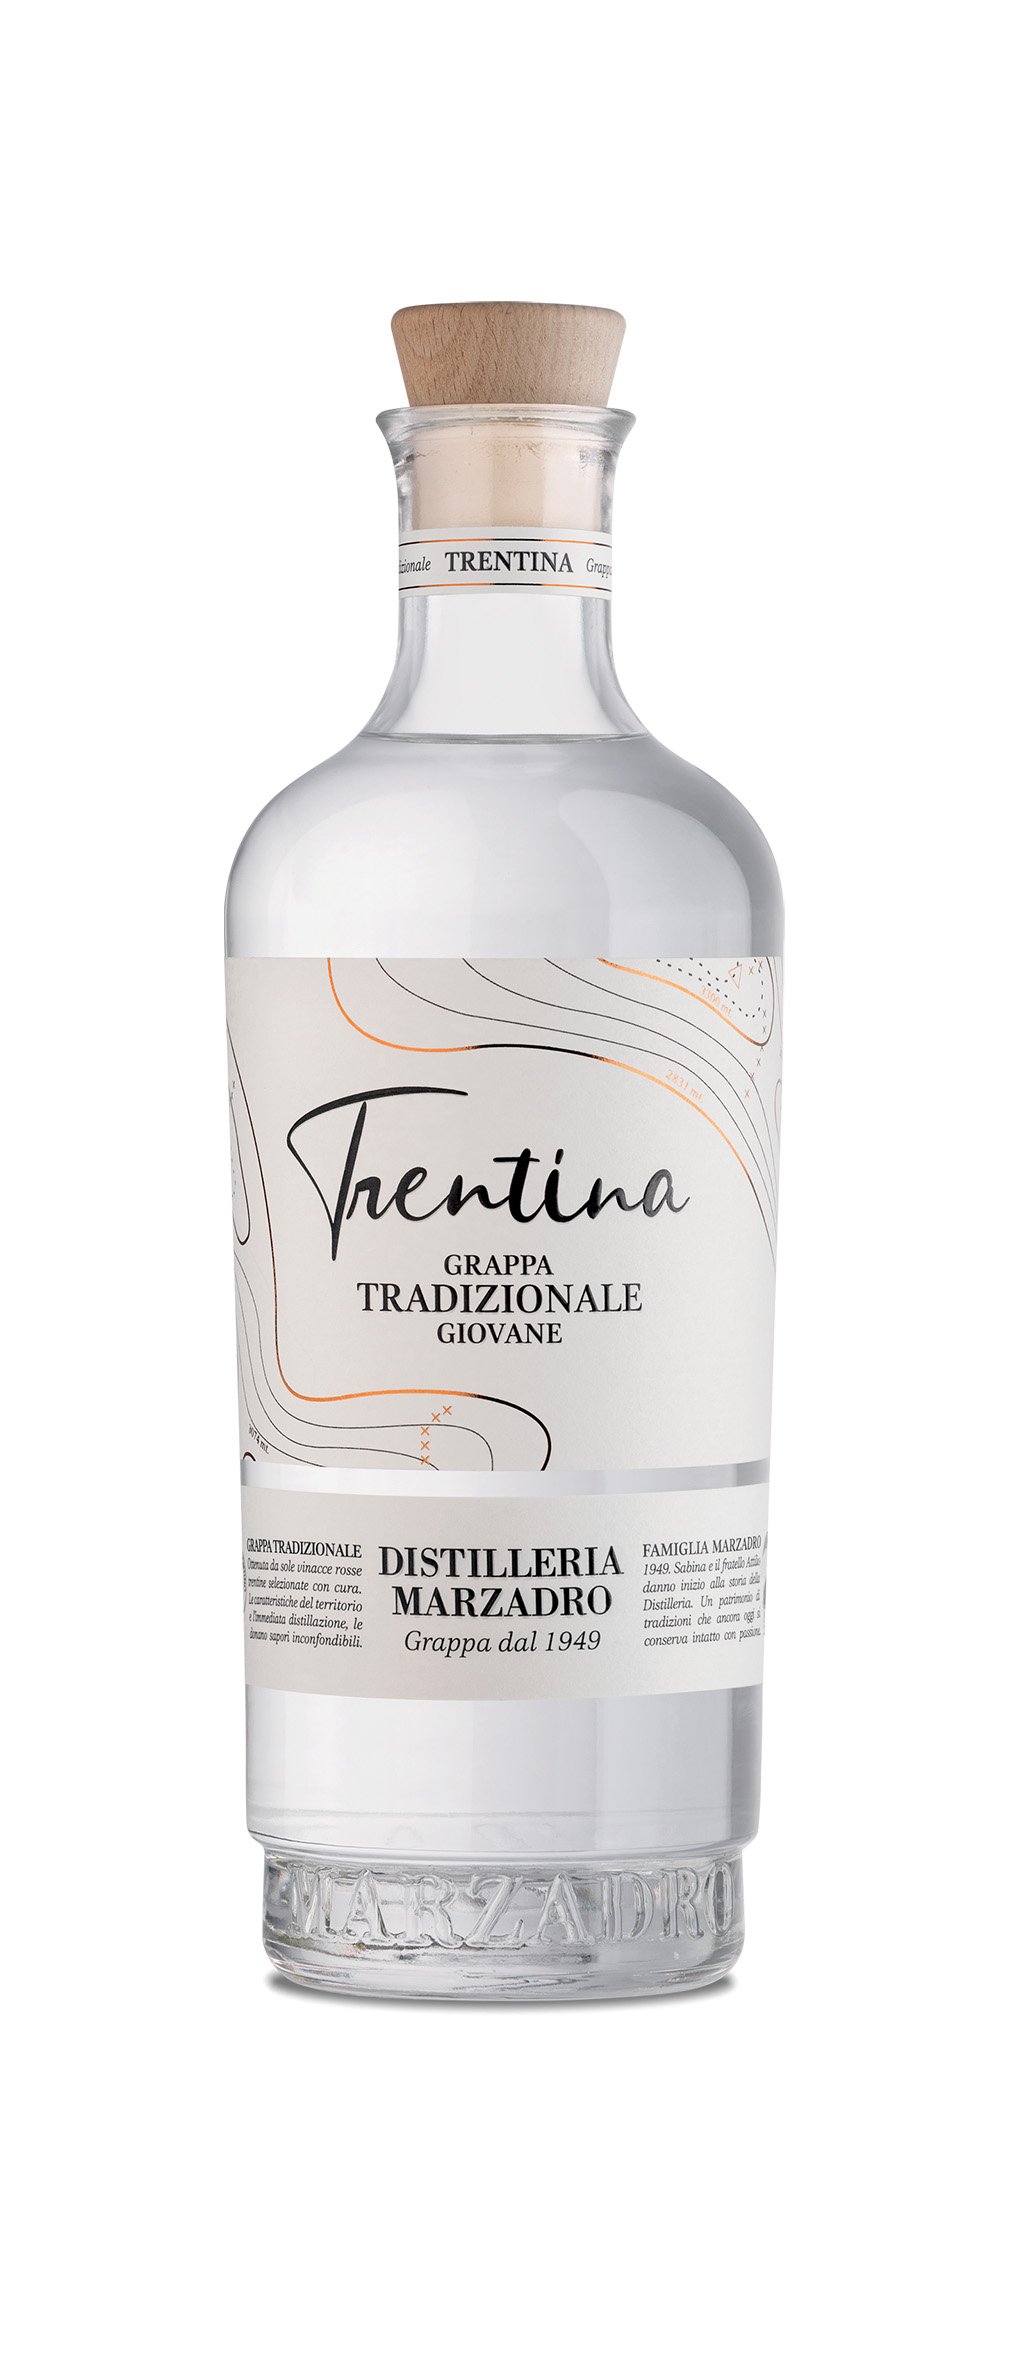 - Südtiroler La giovane Tradizionale Trentina Vinothek Italienische Munzert 0,5l und Feinkost Vol. und Marzadro mehr 41% Weine, - Grappa